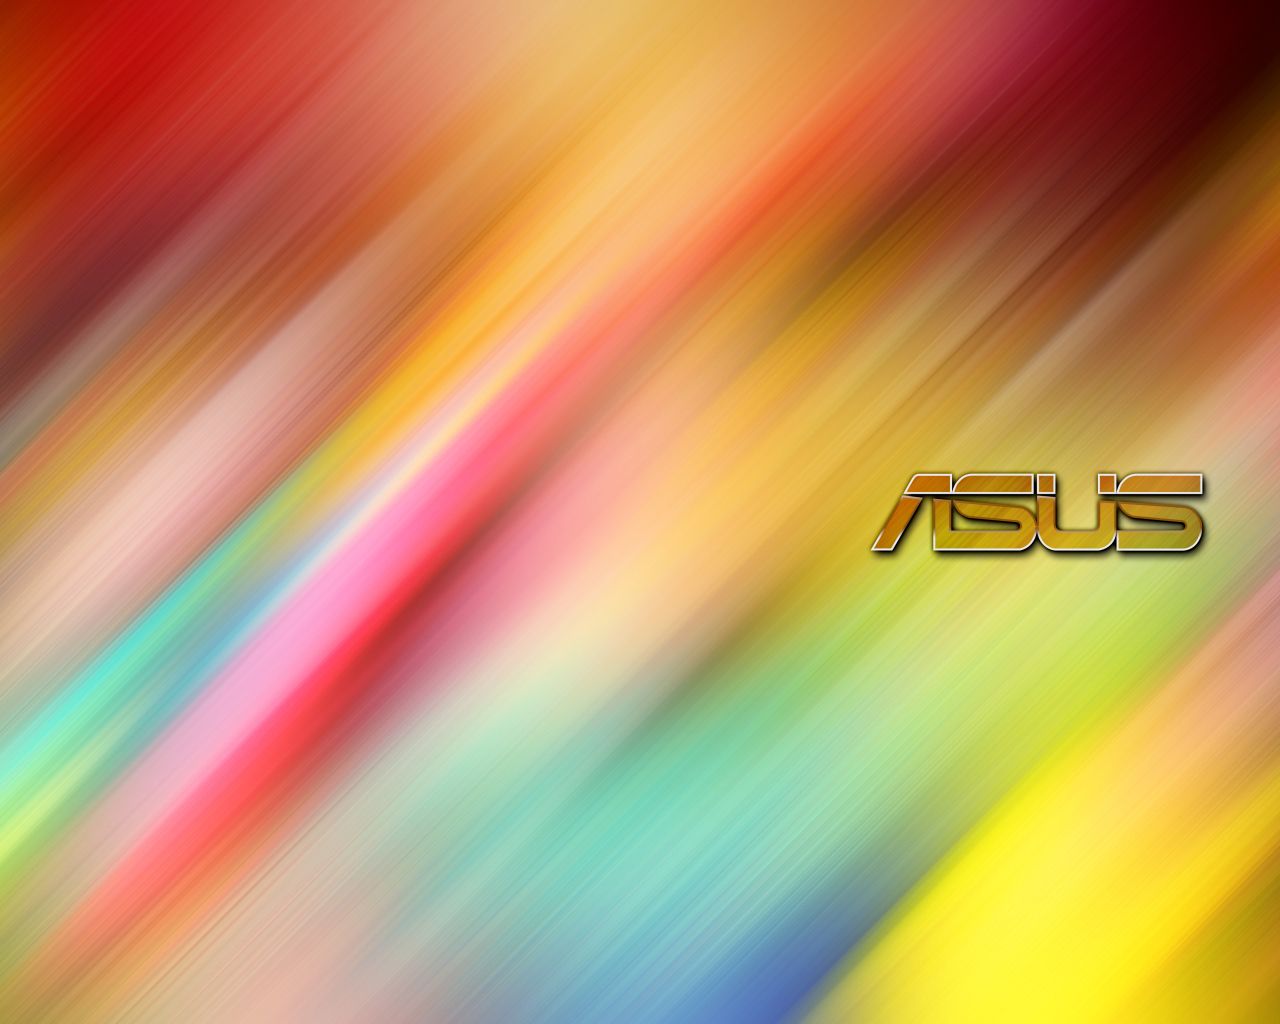 Логотип ASUS на разноцветном фоне